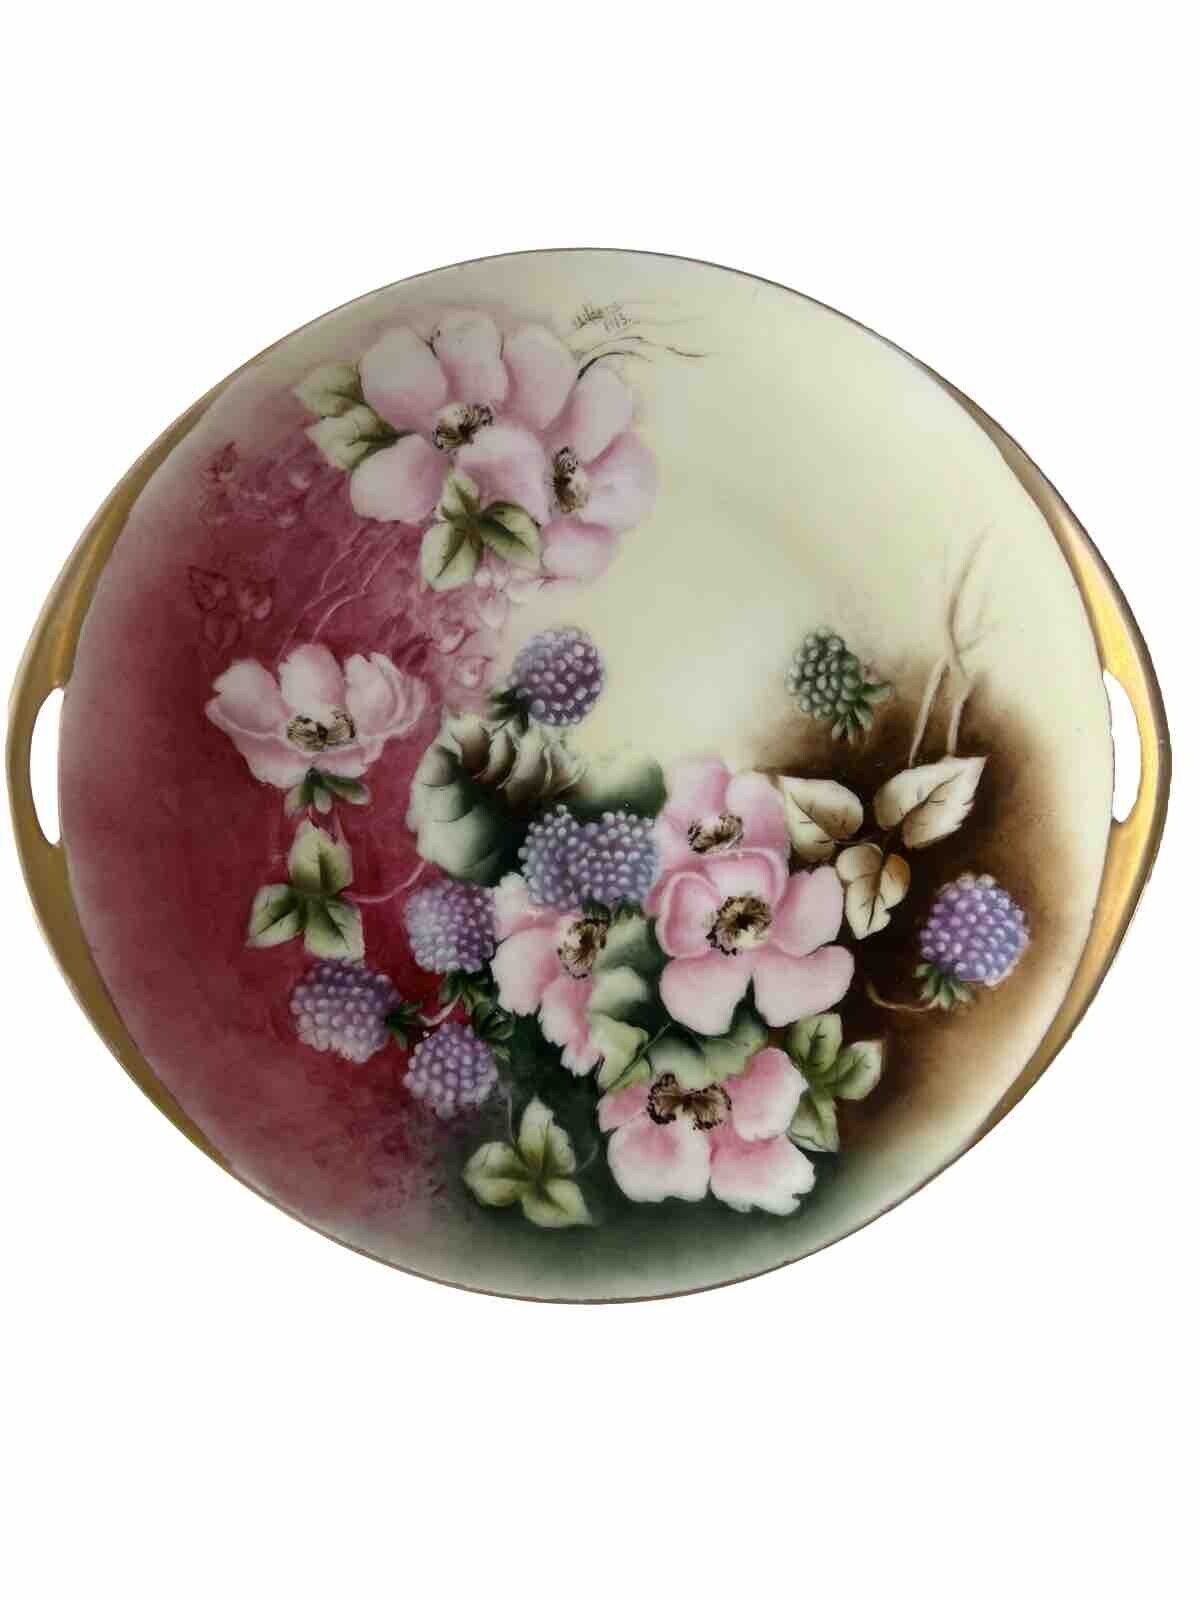 Antique Victoria Austria Signed Hand Painted Porcelain Plate 1913